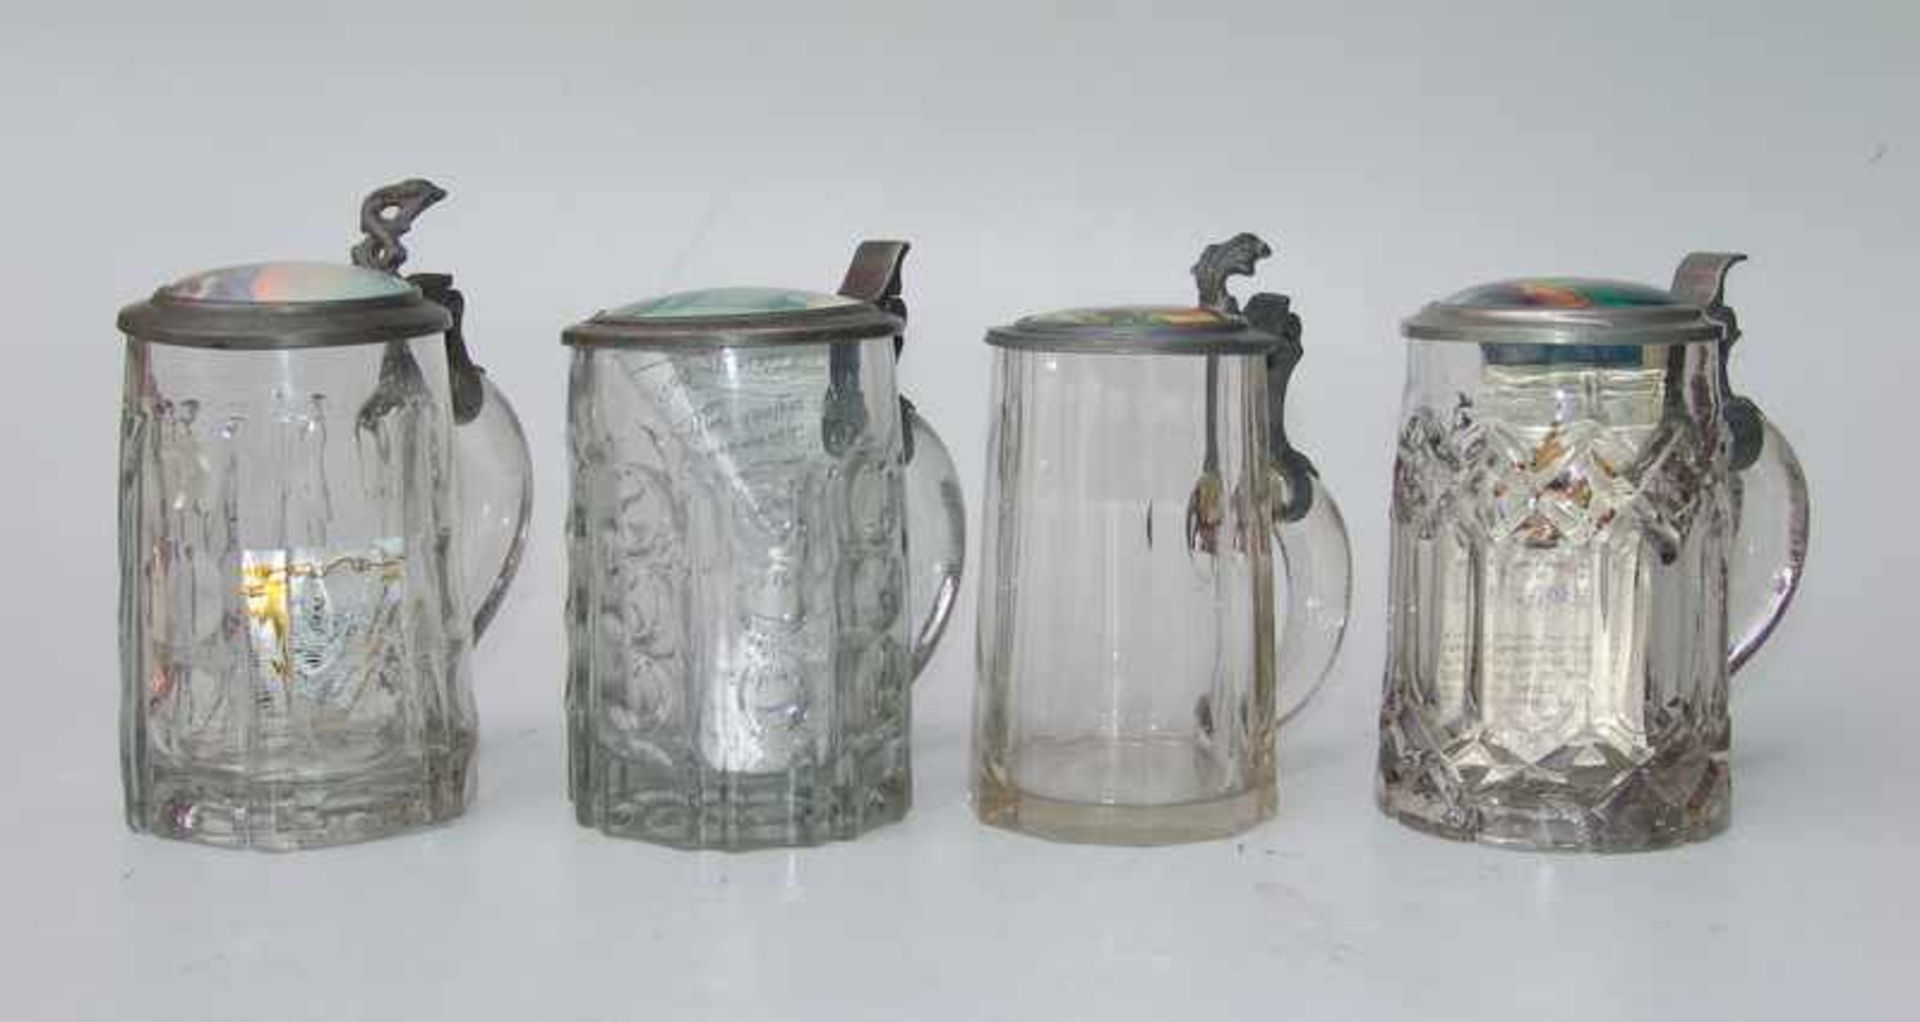 4 Deckelhumpen mit Porzellandeckeln, deutsch um 1900 farbloses Glas gepresst und in Model